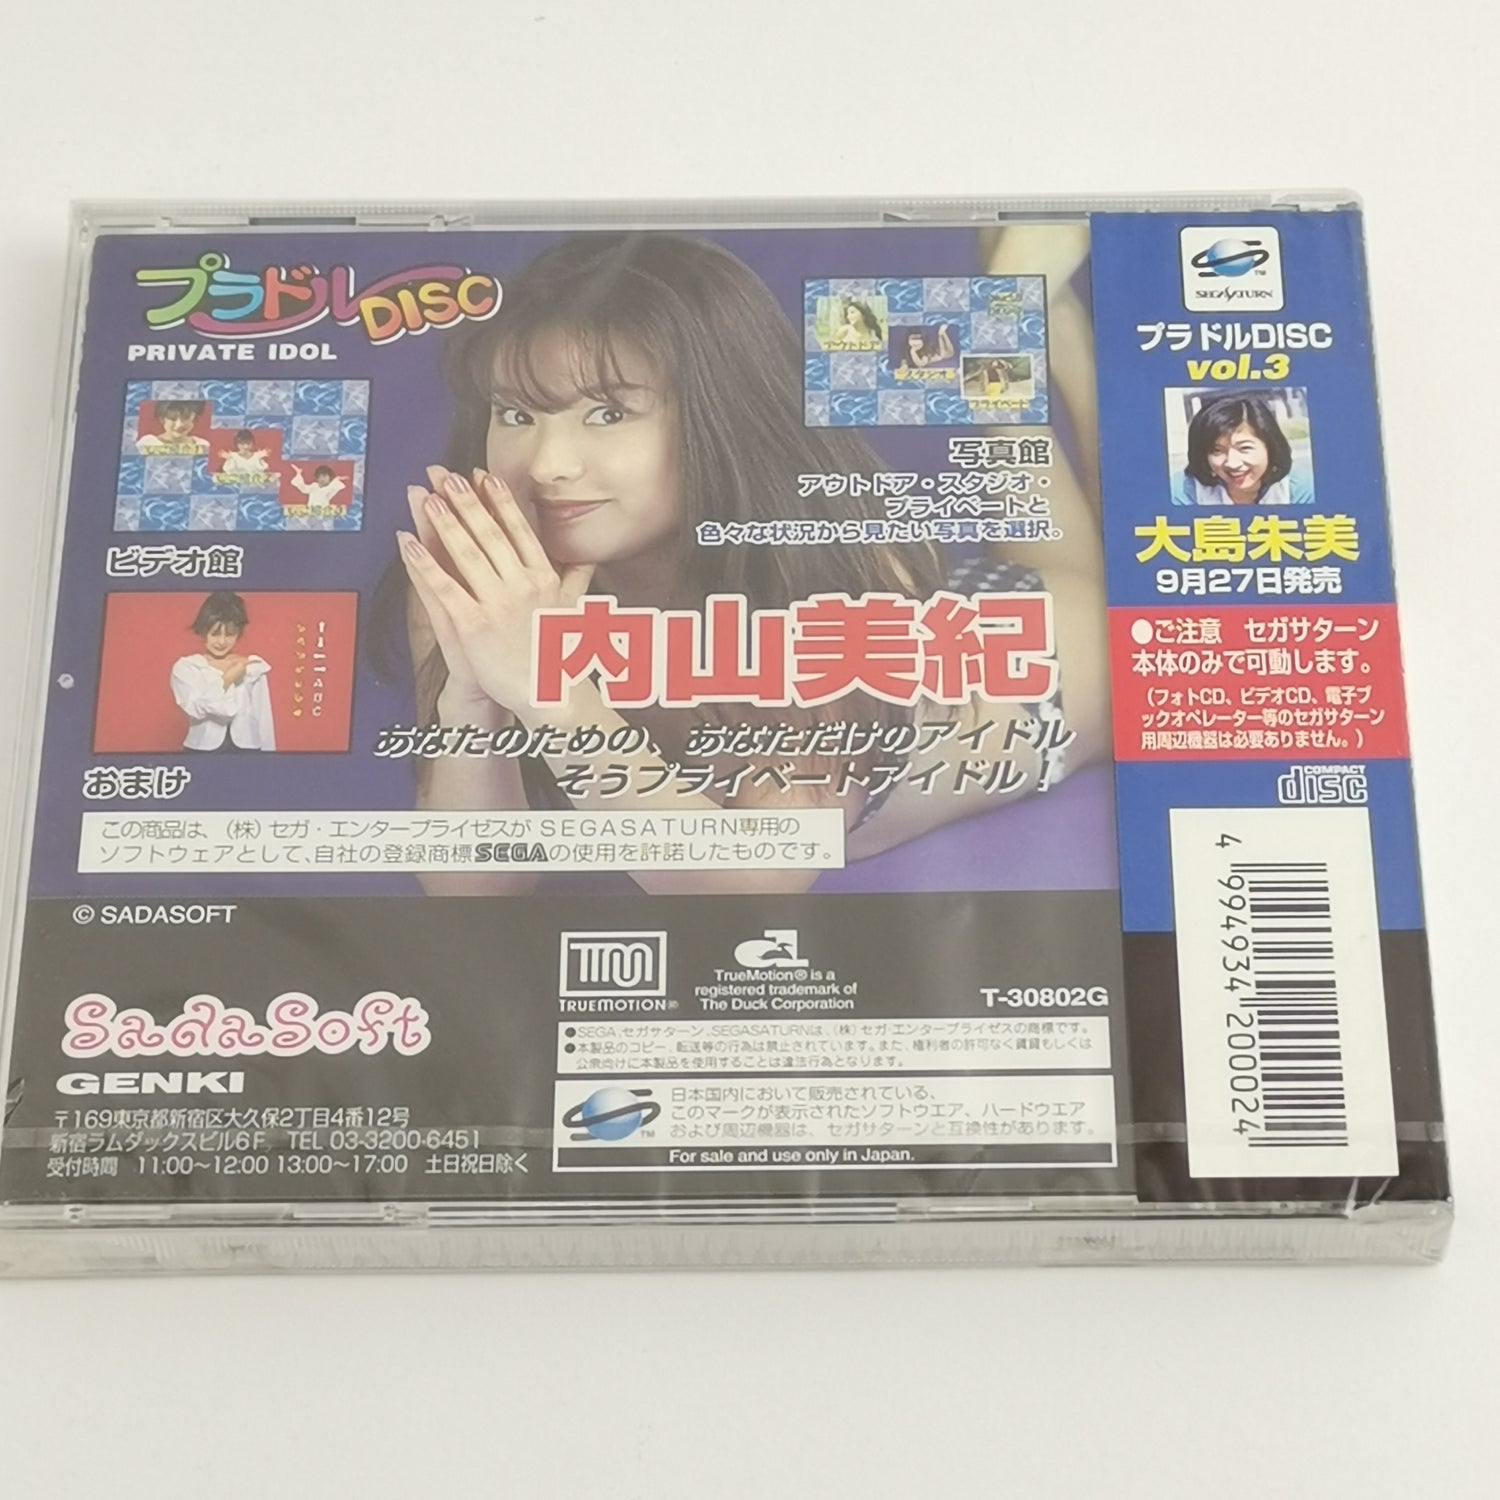 Sega Saturn Game : Private Idol Vol.2 - NEW SEALED | NTSC-J JAPAN OVP